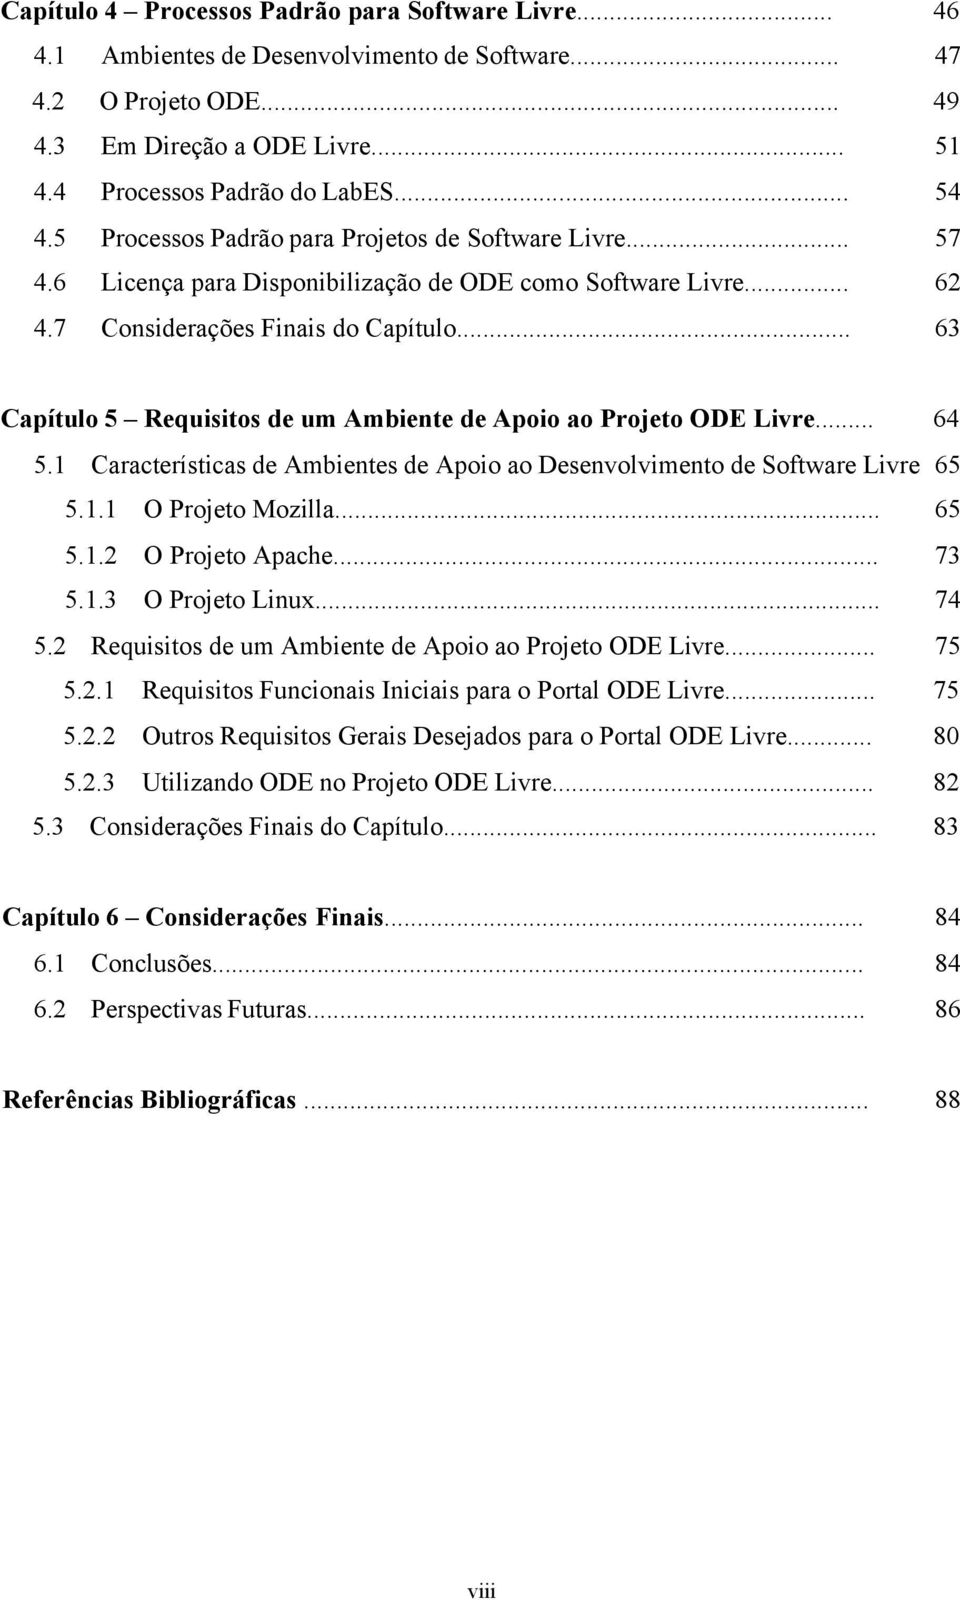 .. 63 Capítulo 5 Requisitos de um Ambiente de Apoio ao Projeto ODE Livre... 64 5.1 Características de Ambientes de Apoio ao Desenvolvimento de Software Livre 65 5.1.1 O Projeto Mozilla... 65 5.1.2 O Projeto Apache.